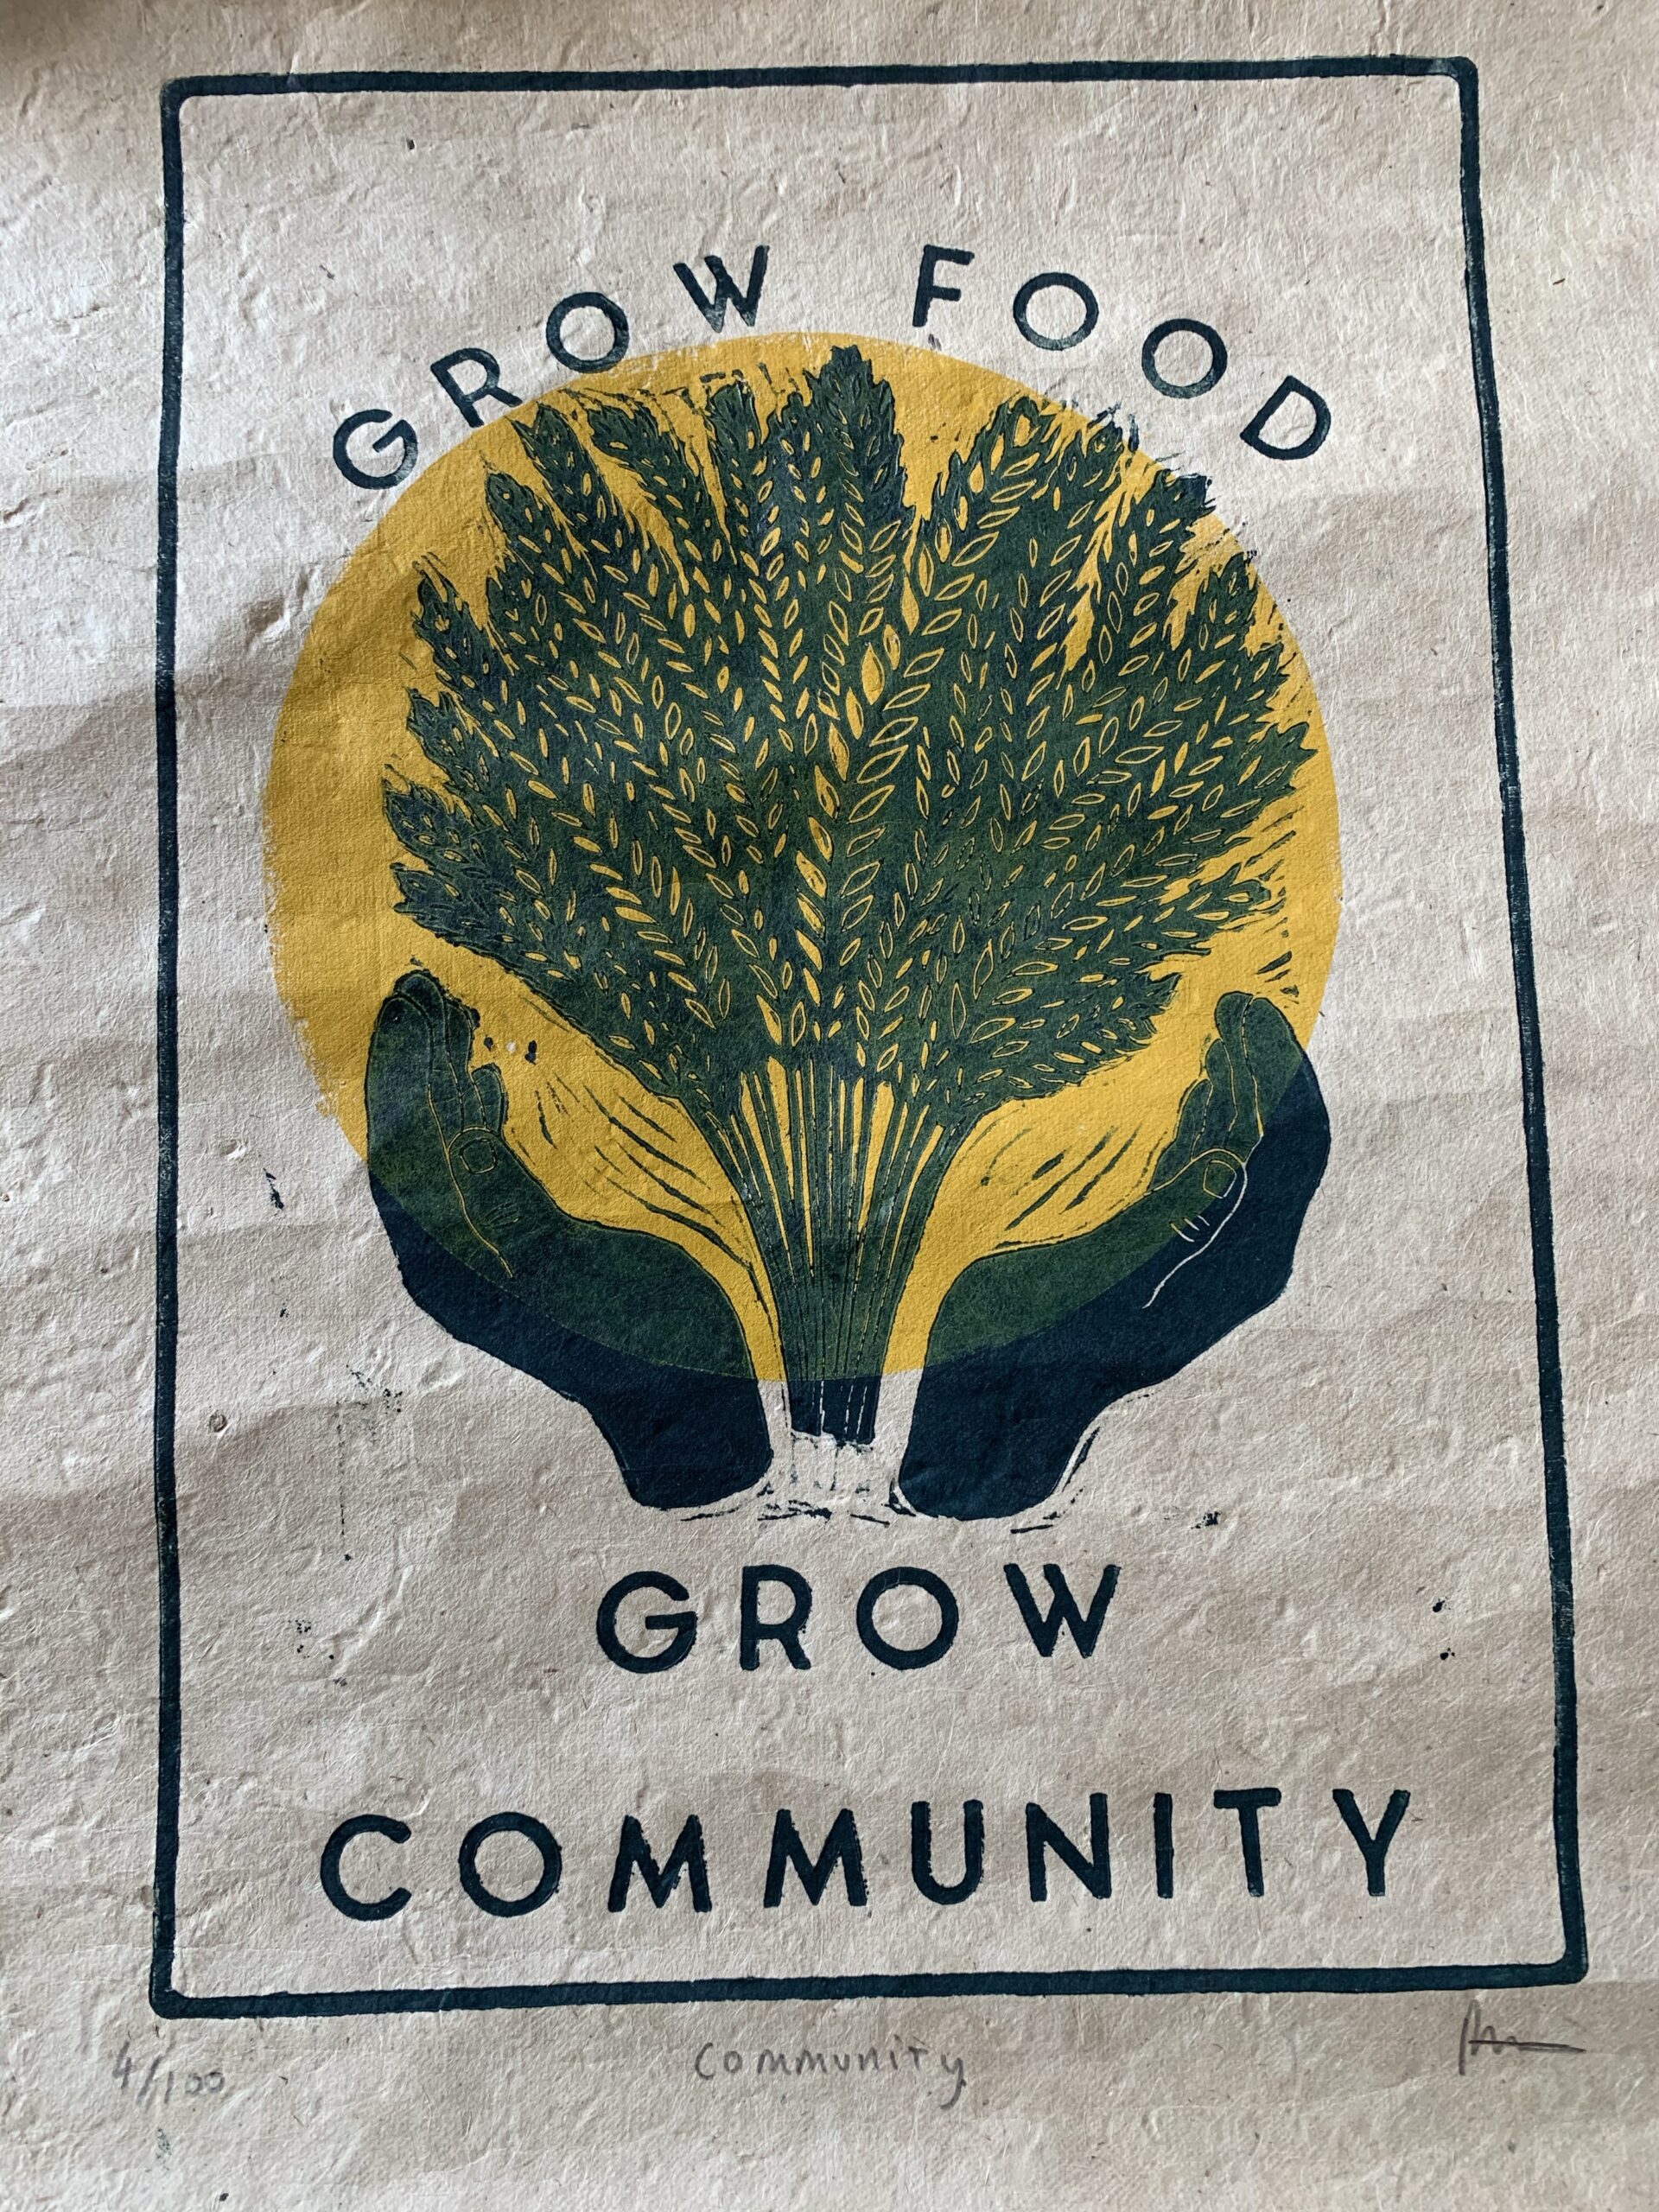 Seedlings for Community